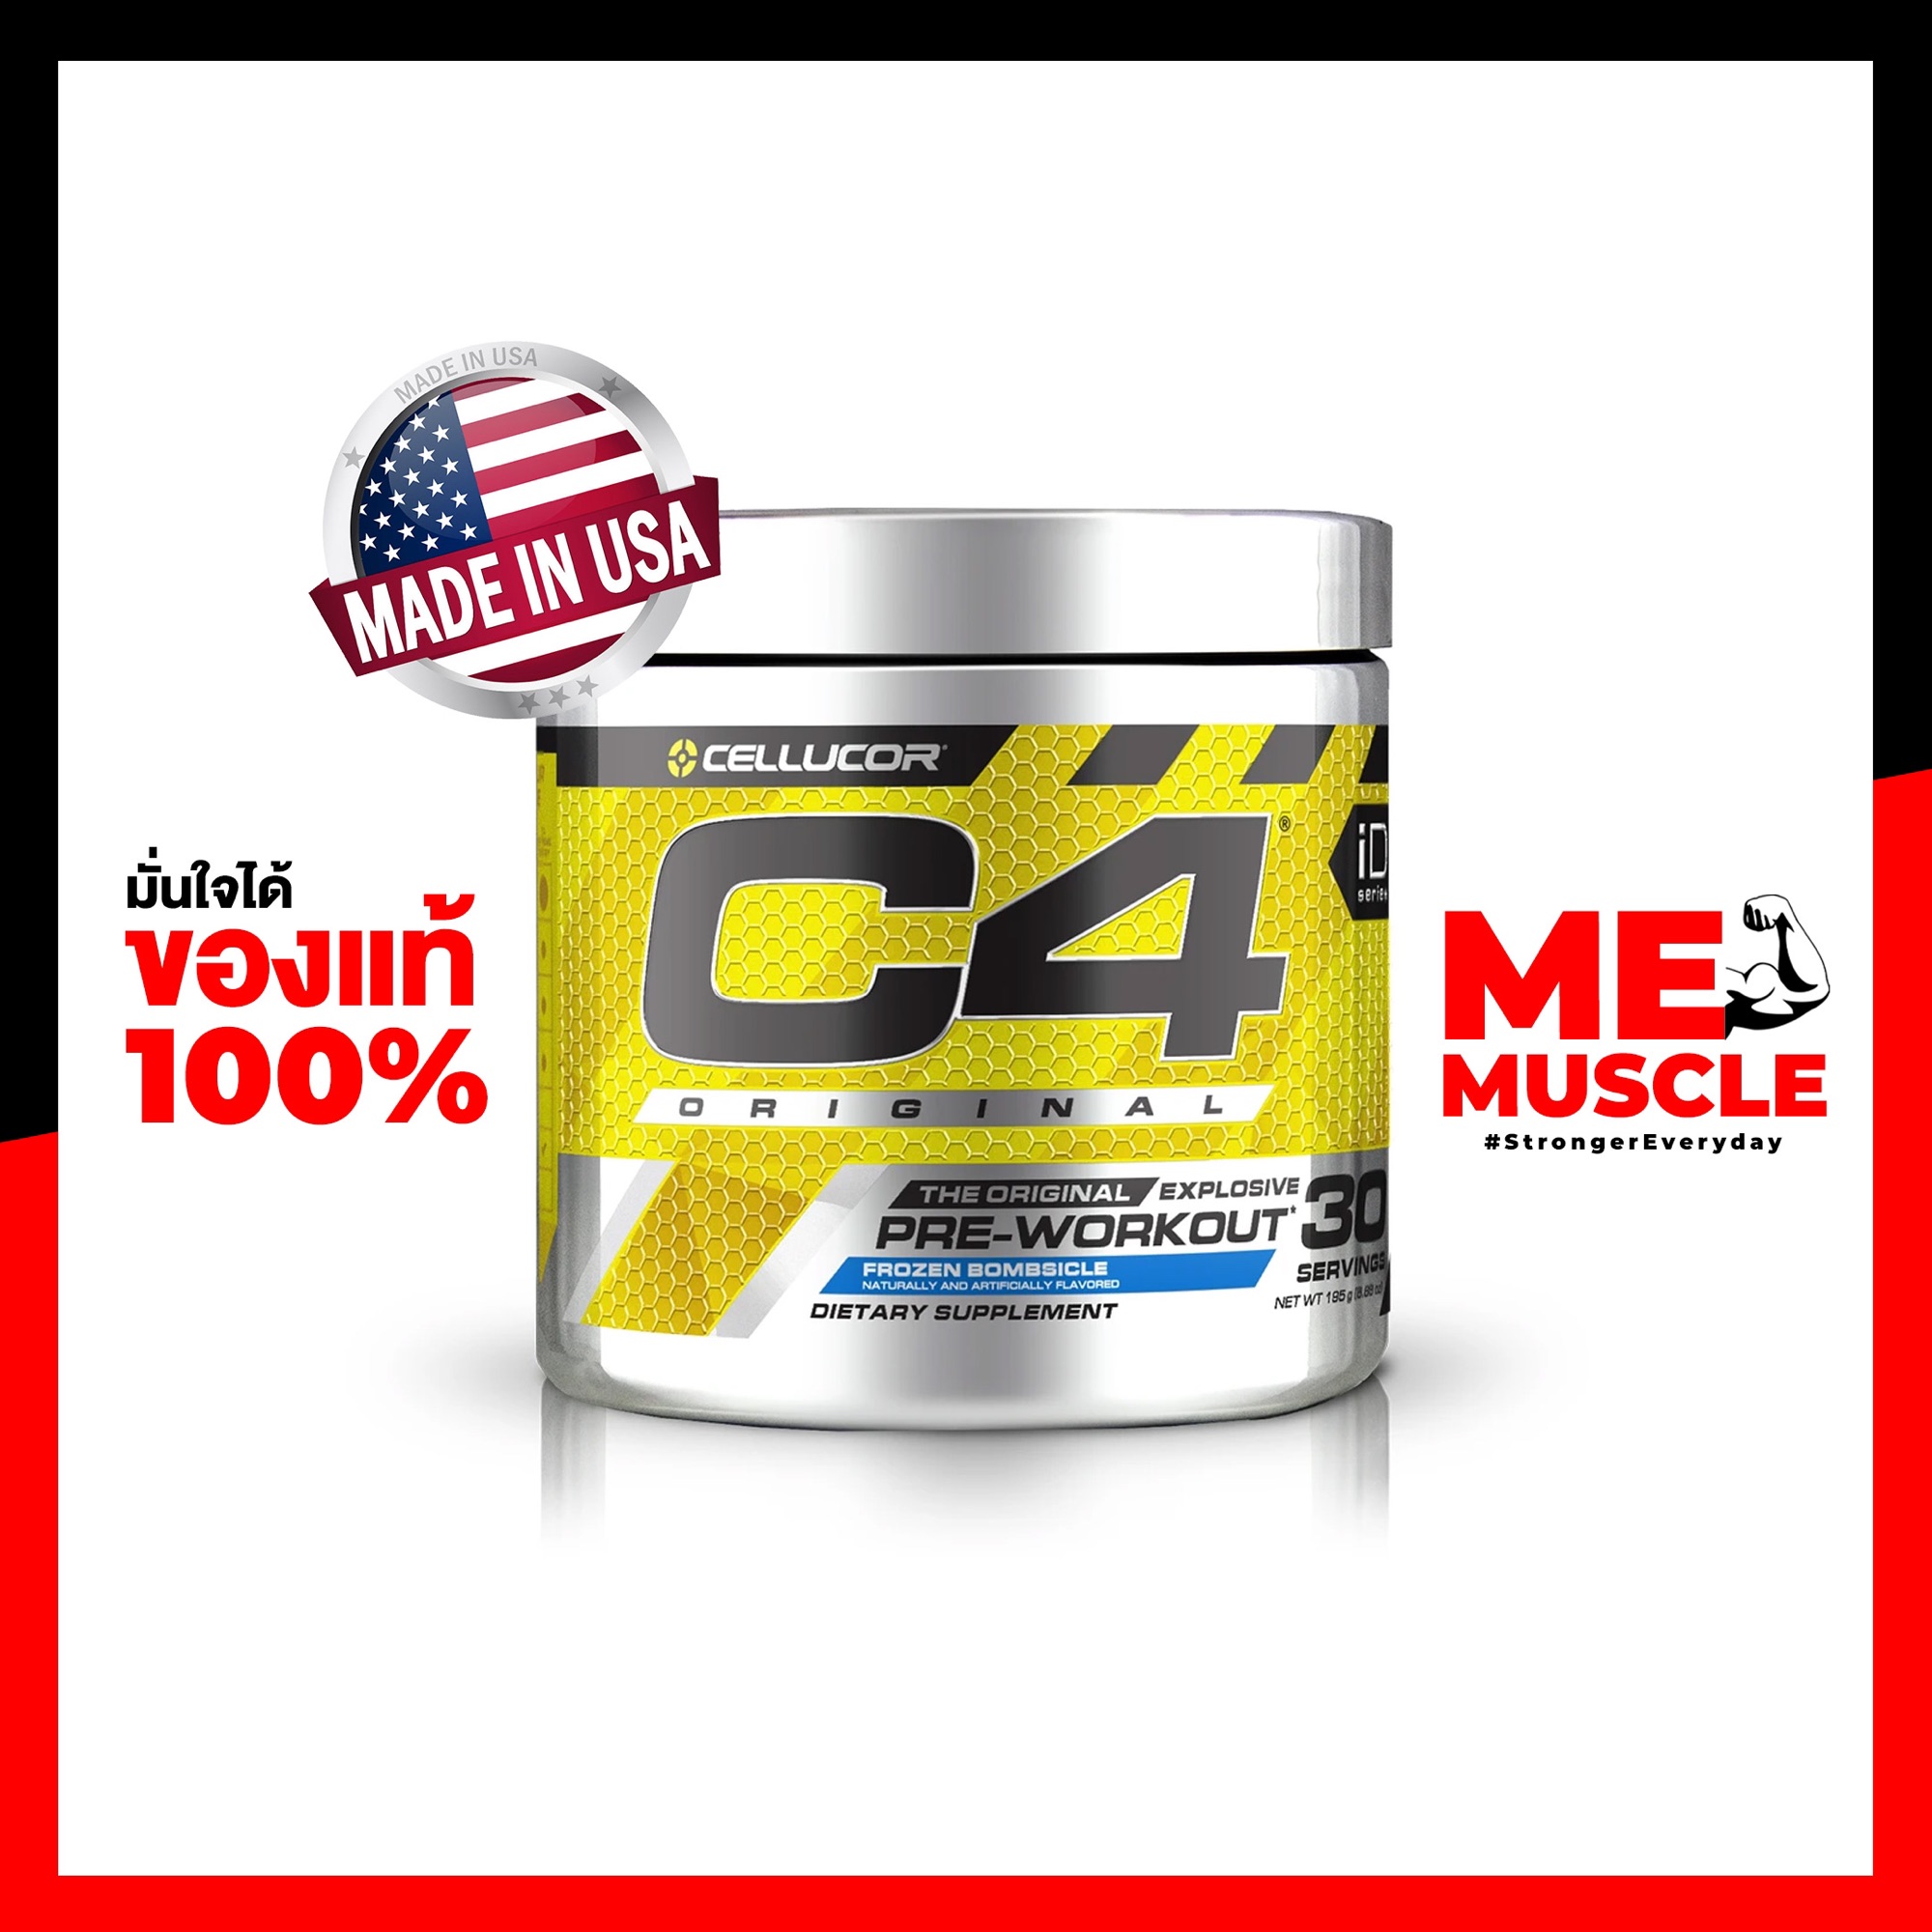 Cellucor C4 Original 30 servings [Pre-workout] Explosive Energy / Intense Focus / Unbelievable Muscle Pumps